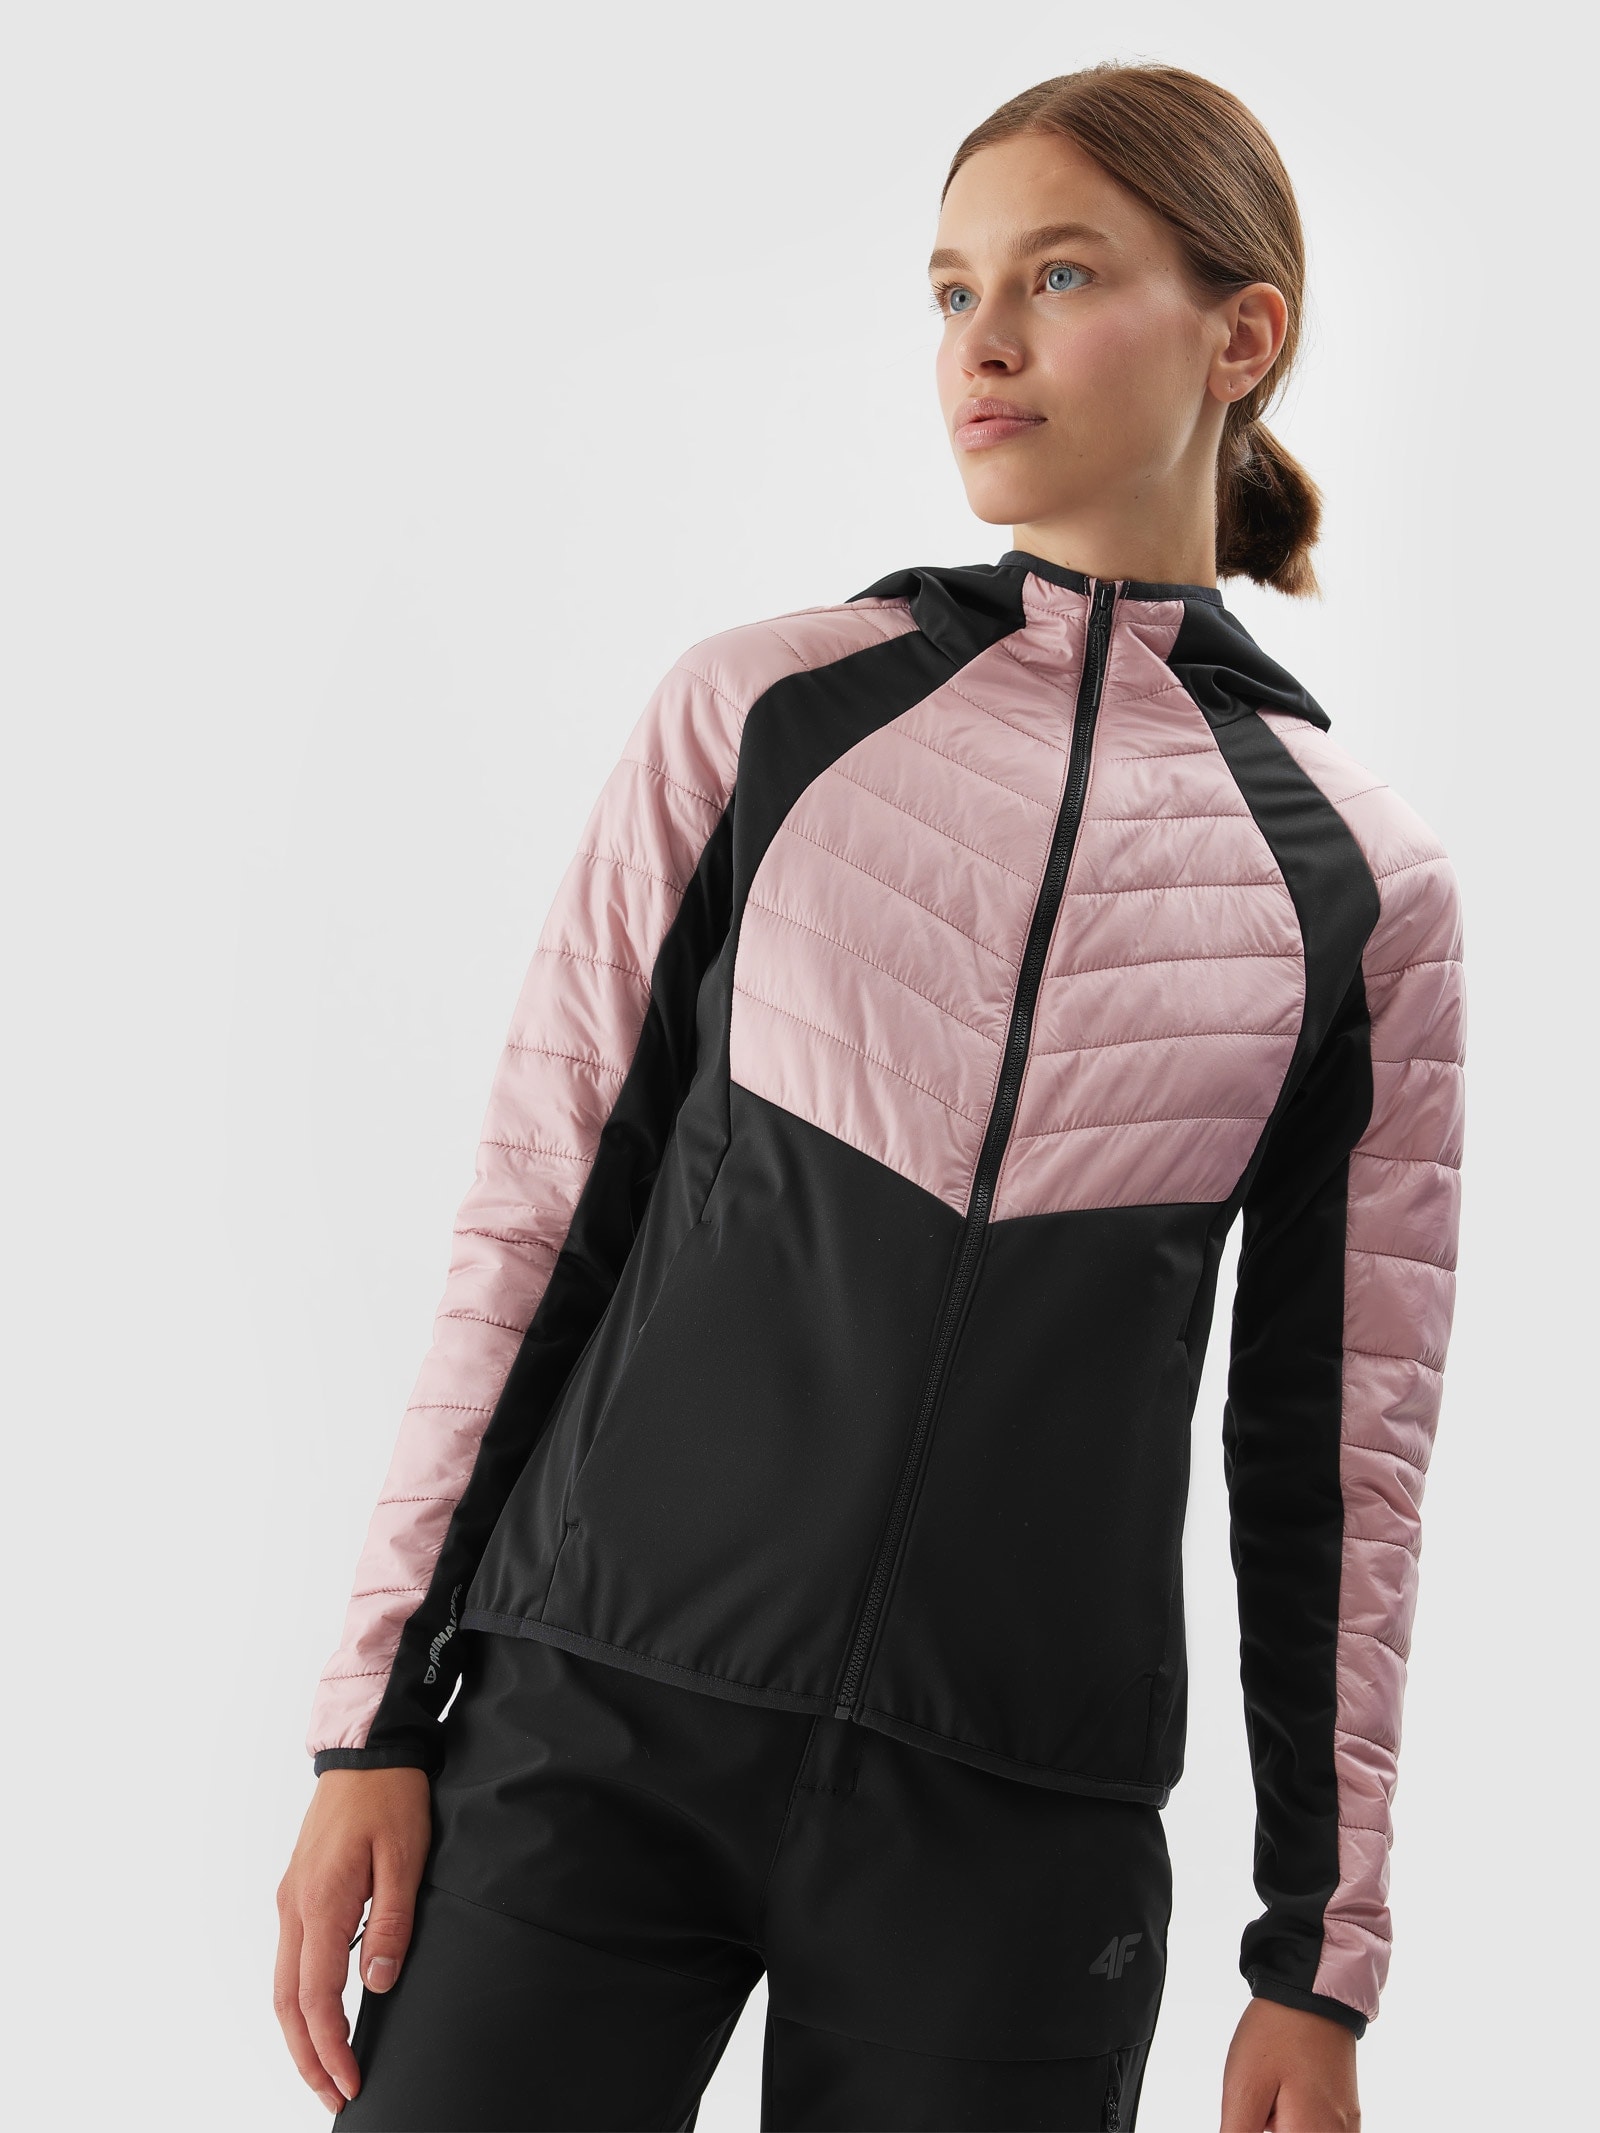 Dámska trekingová bunda s recyklovanou výplňou Primaloft - ružová